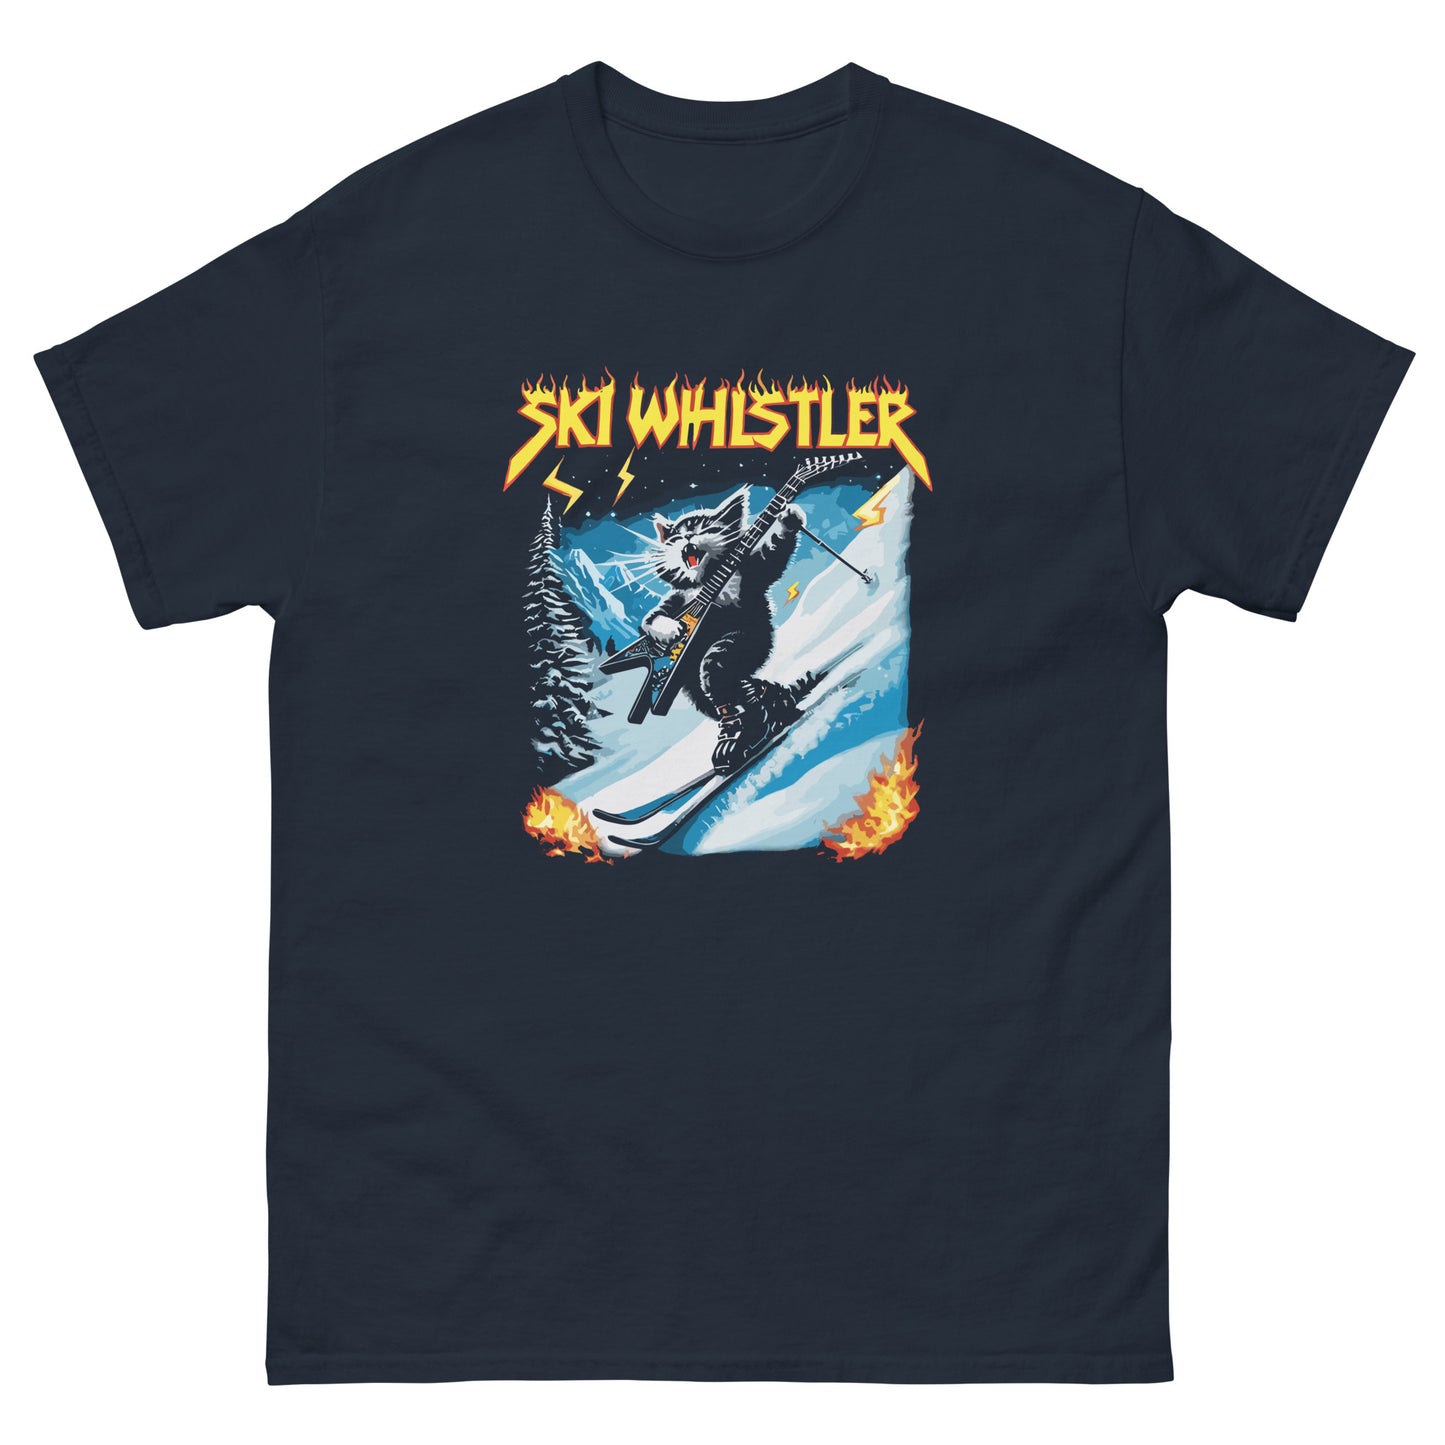 Ski Whistler Rockstar Cat T-shirt